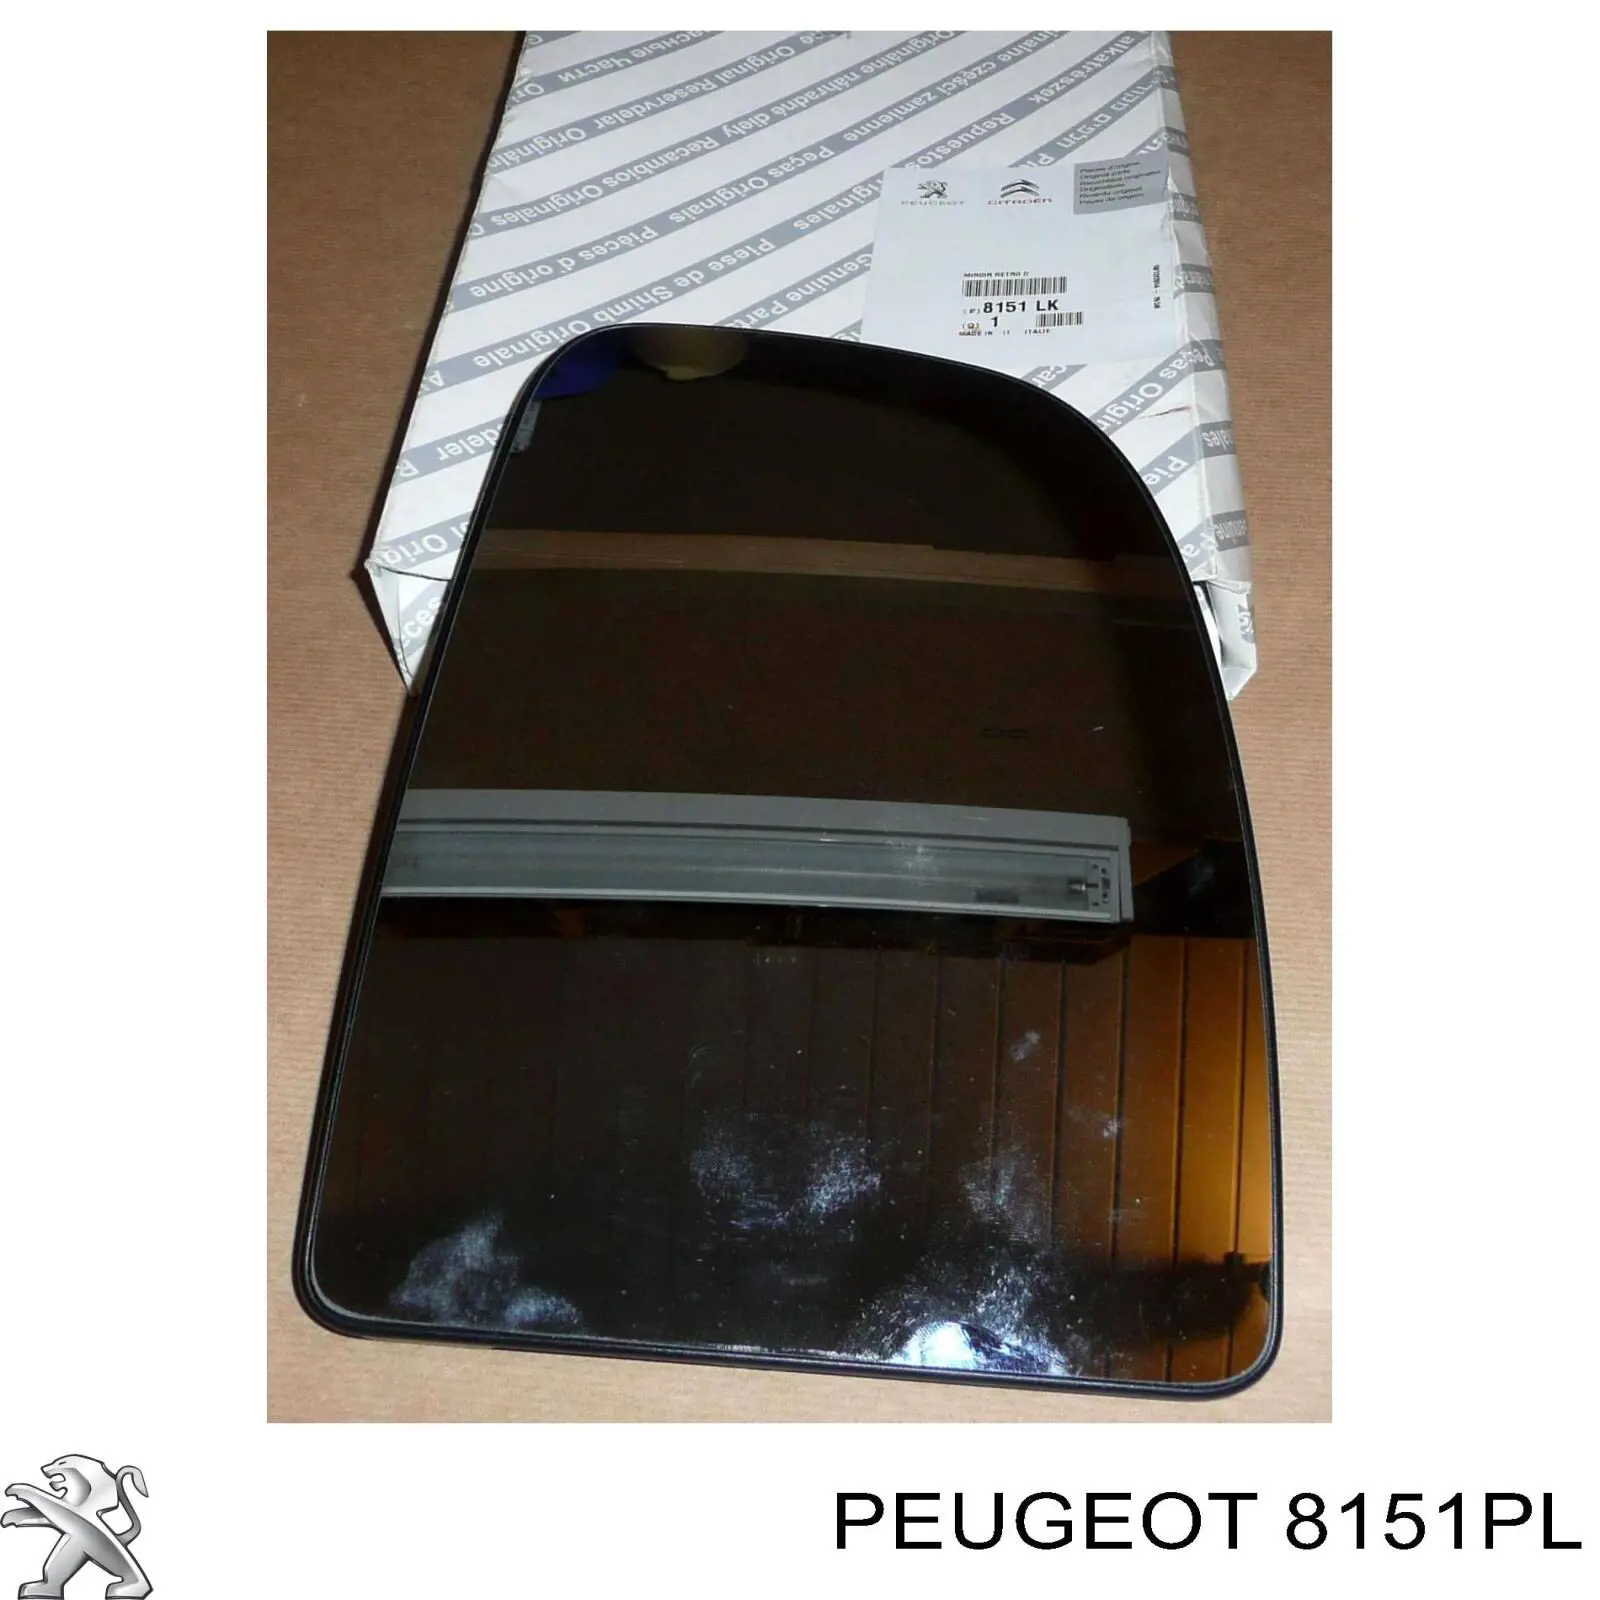 Зеркальный элемент зеркала заднего вида PEUGEOT 8151PX